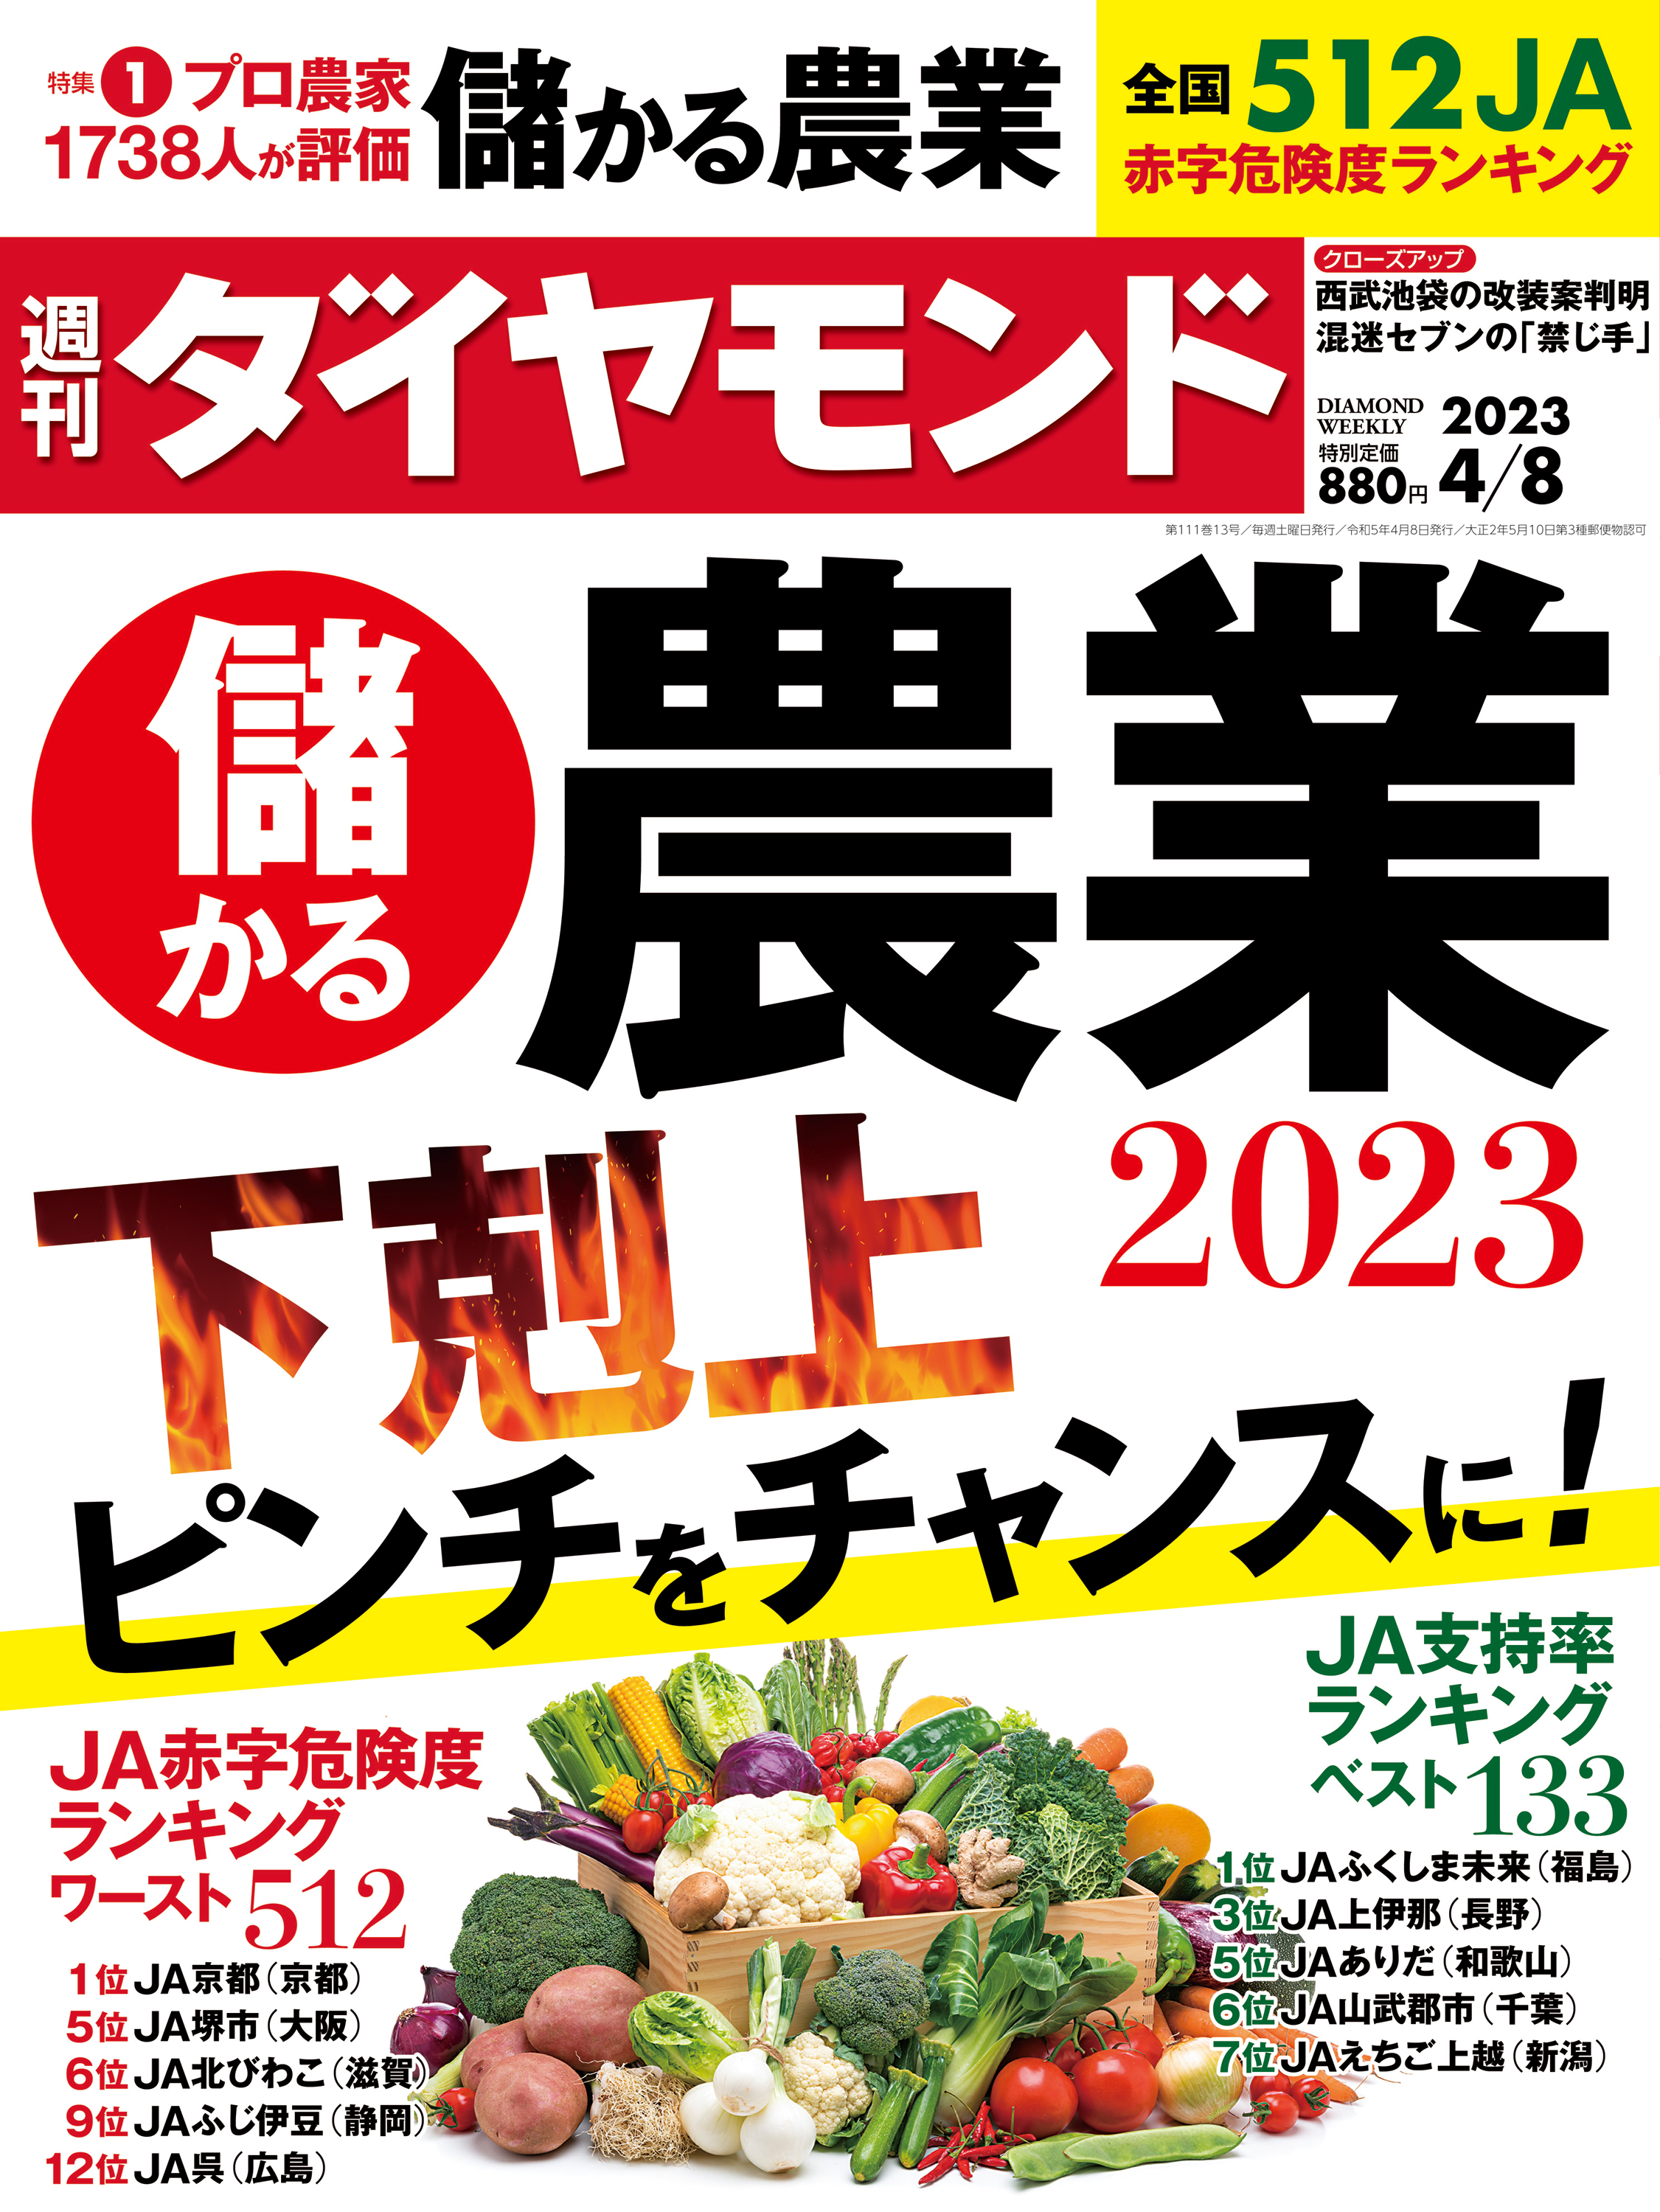 儲かる農業2023(週刊ダイヤモンド 2023年4/8号) - ダイヤモンド社